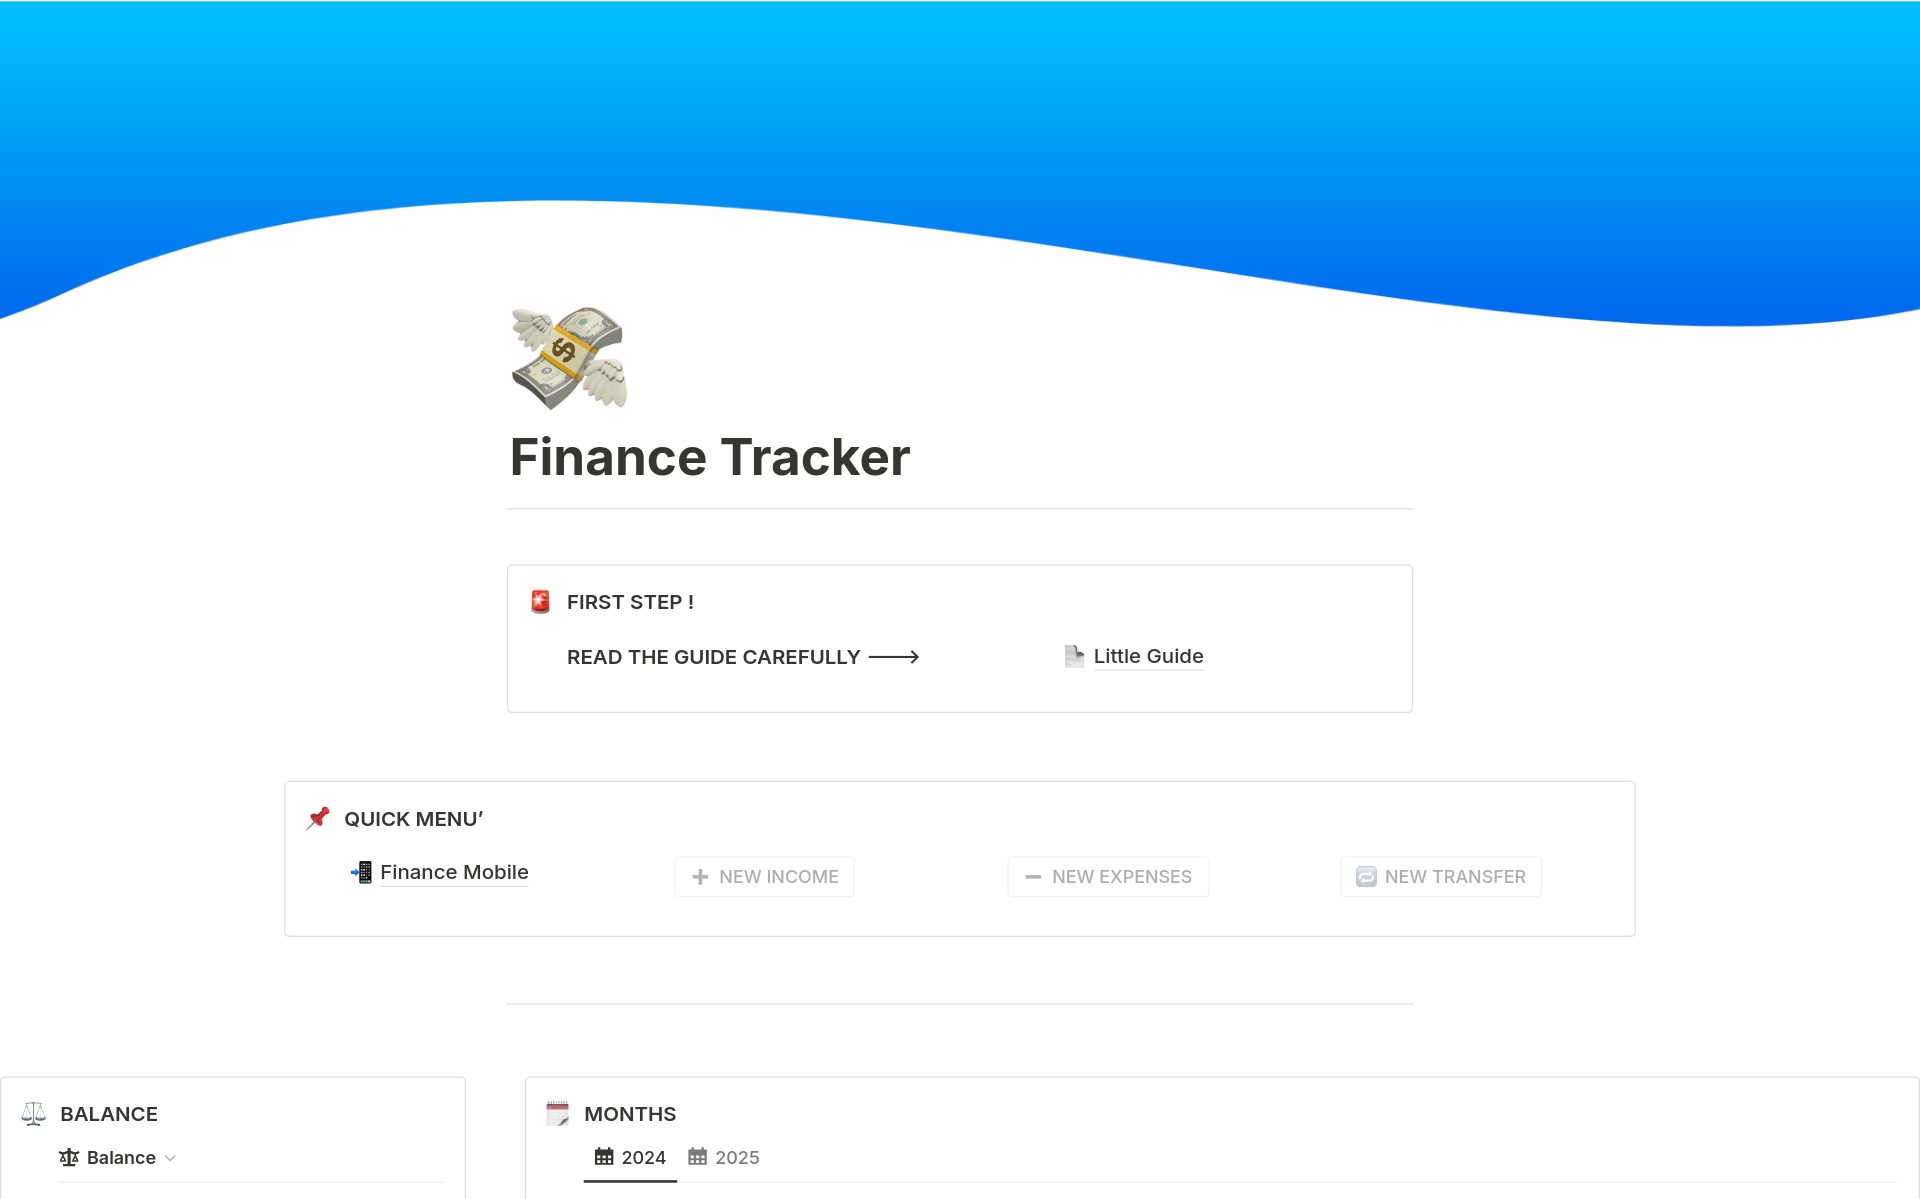 Uma prévia do modelo para Complete Finance Tracker